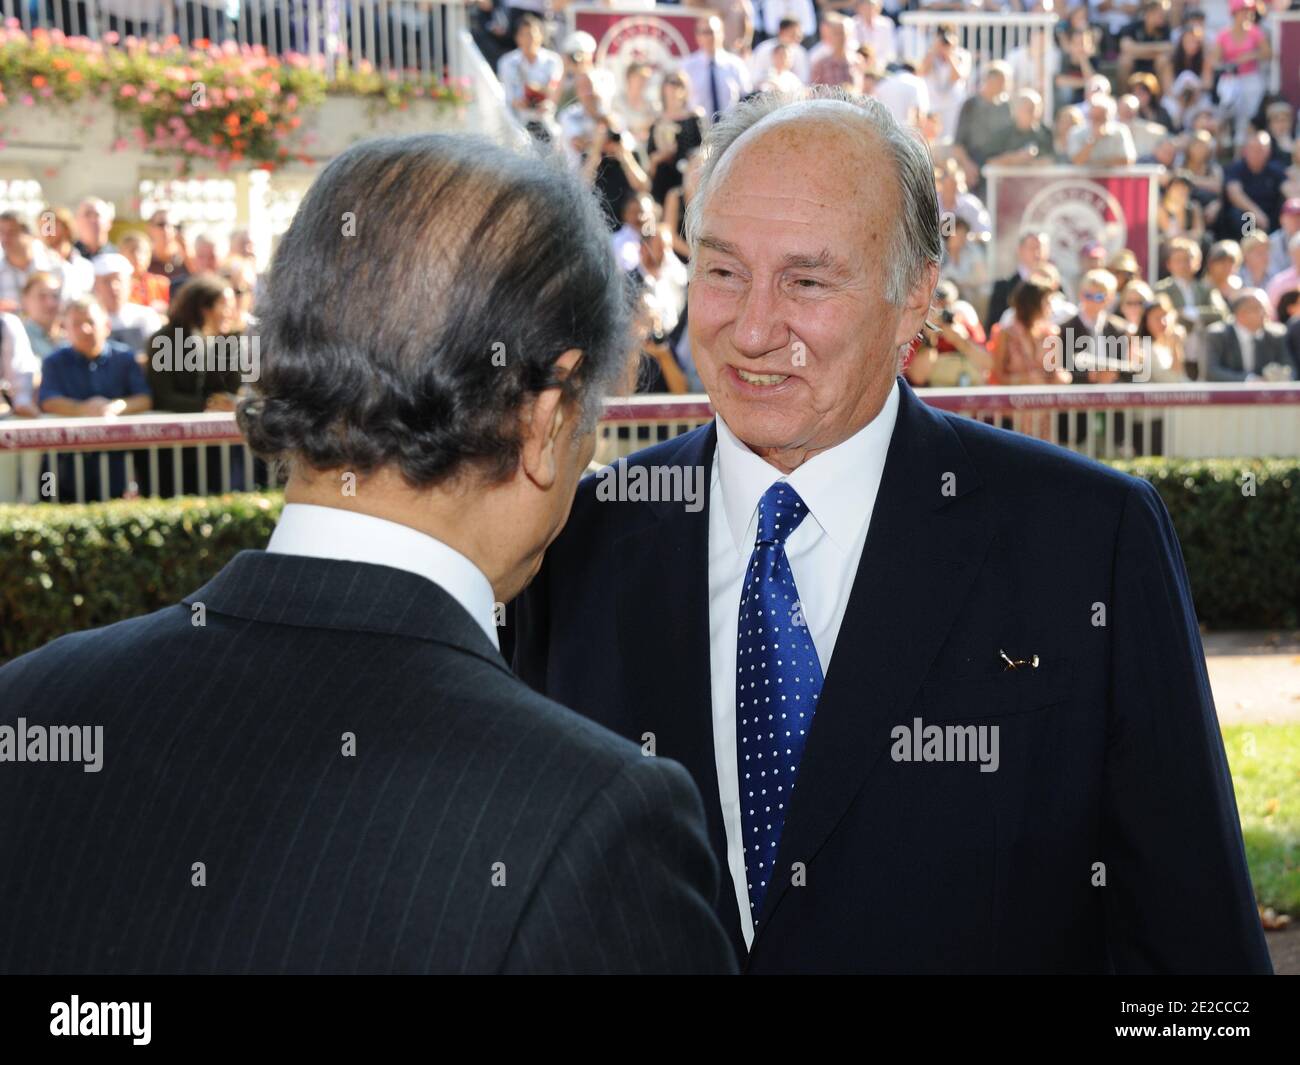 Son Altesse l'Aga Khan assistait à la 90e édition du prix Qatar Arc de Triomphe à l'hippodrome de Longchamp le 2 octobre 2011 à Paris, France. Photo d'Alban Wyters/ABACAPRESS.COM Banque D'Images